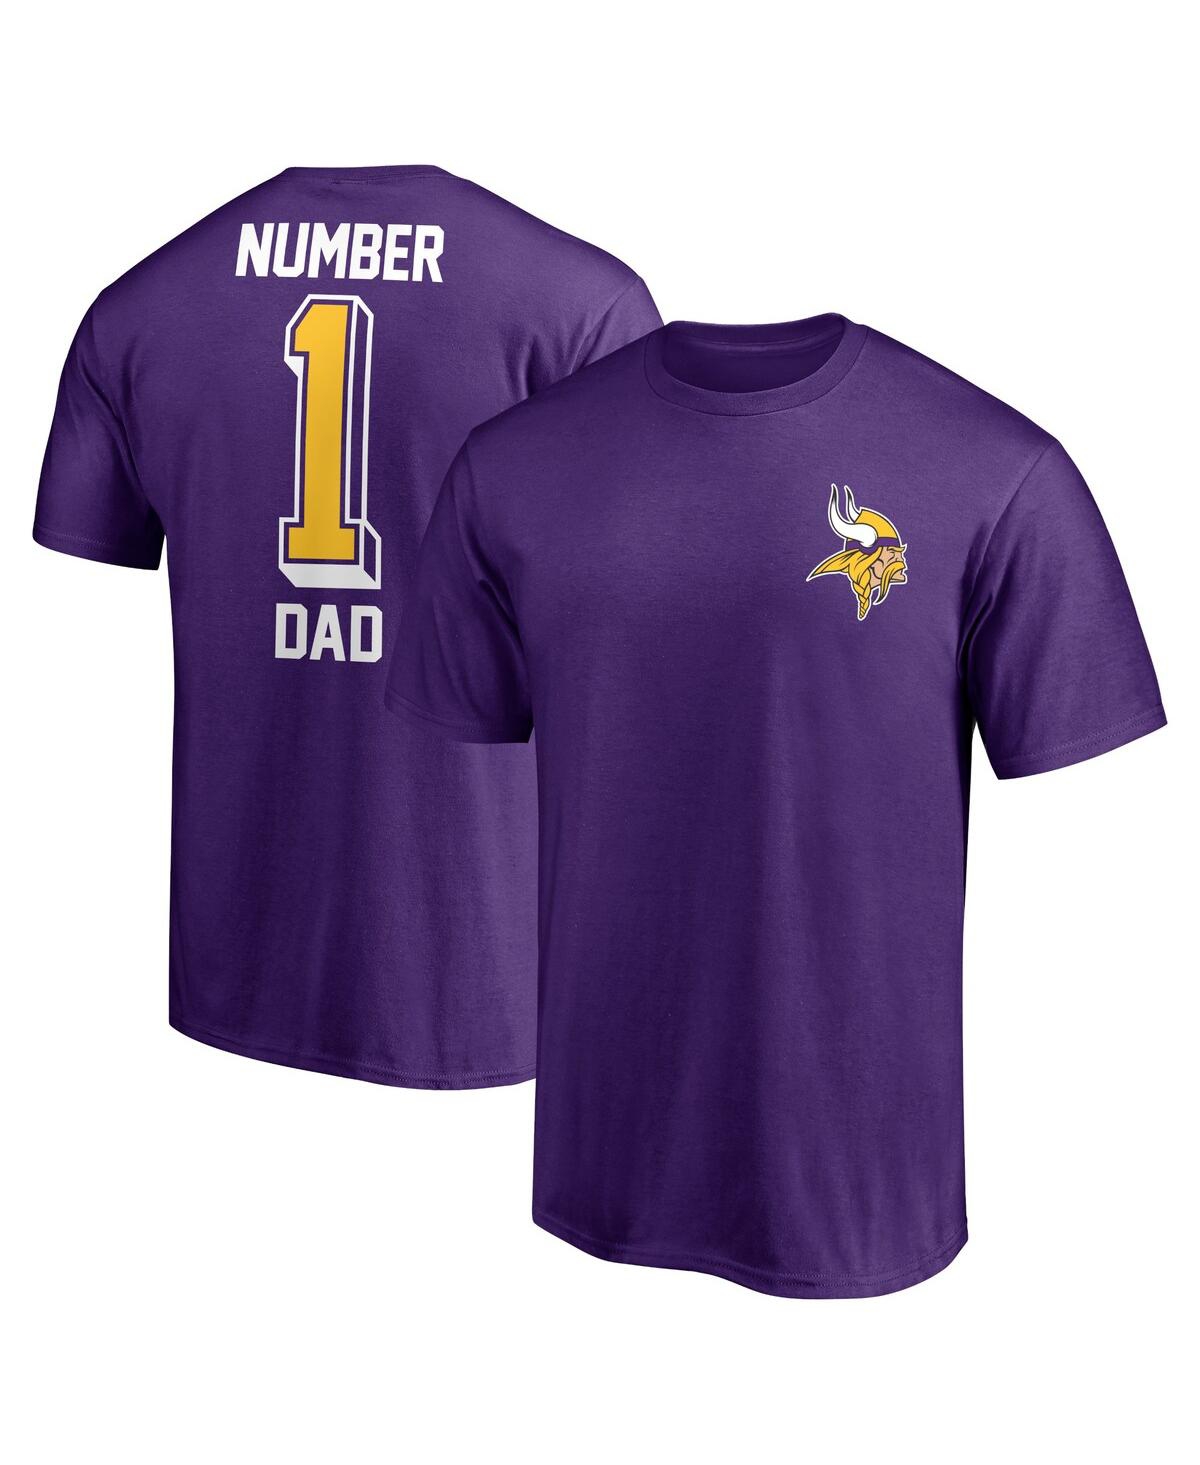 Fanatics Men's  Nfl #1 Dad T-shirt In Minnesota Vikings